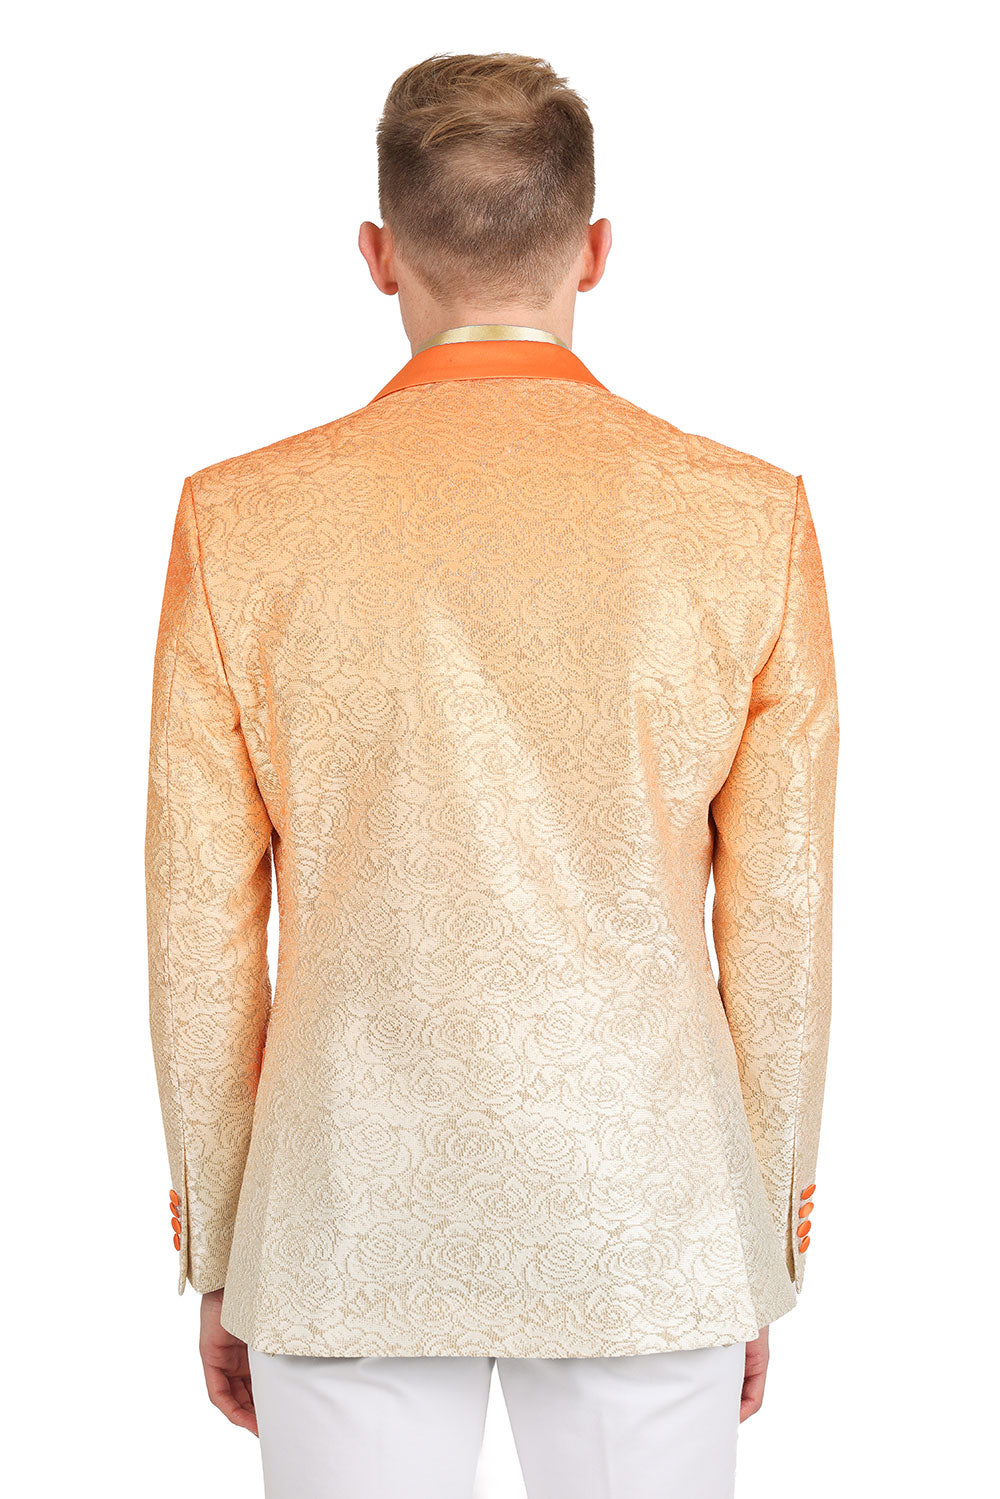 BARABAS Men's Two-Tone Floral Pattern Design Notched Blazer 3BL02 Orange